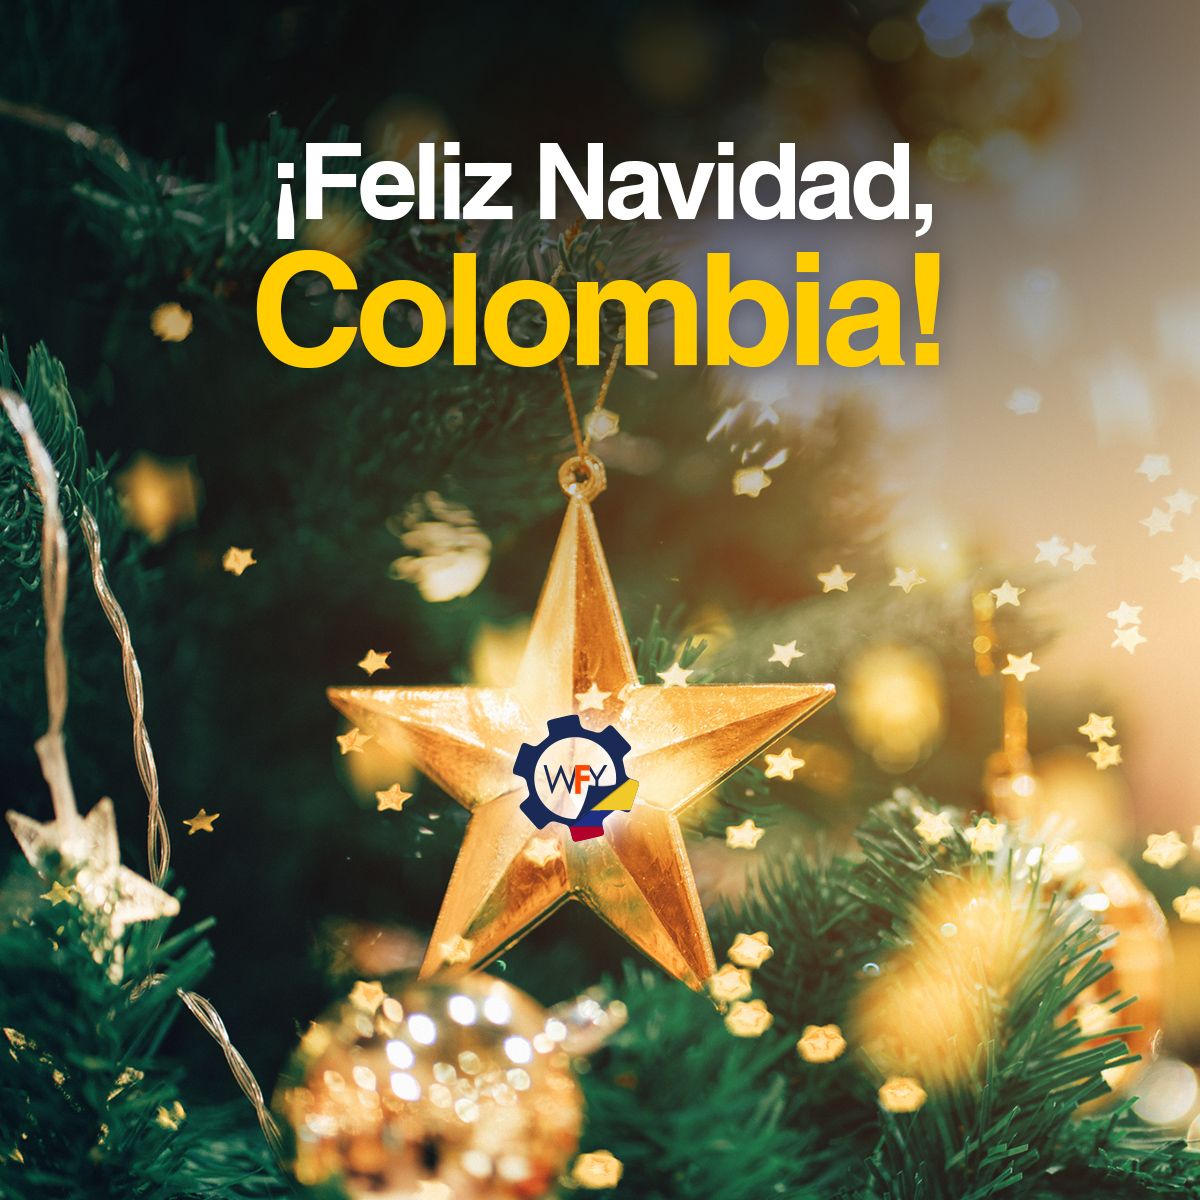 ¡Feliz Navidad, Colombia!